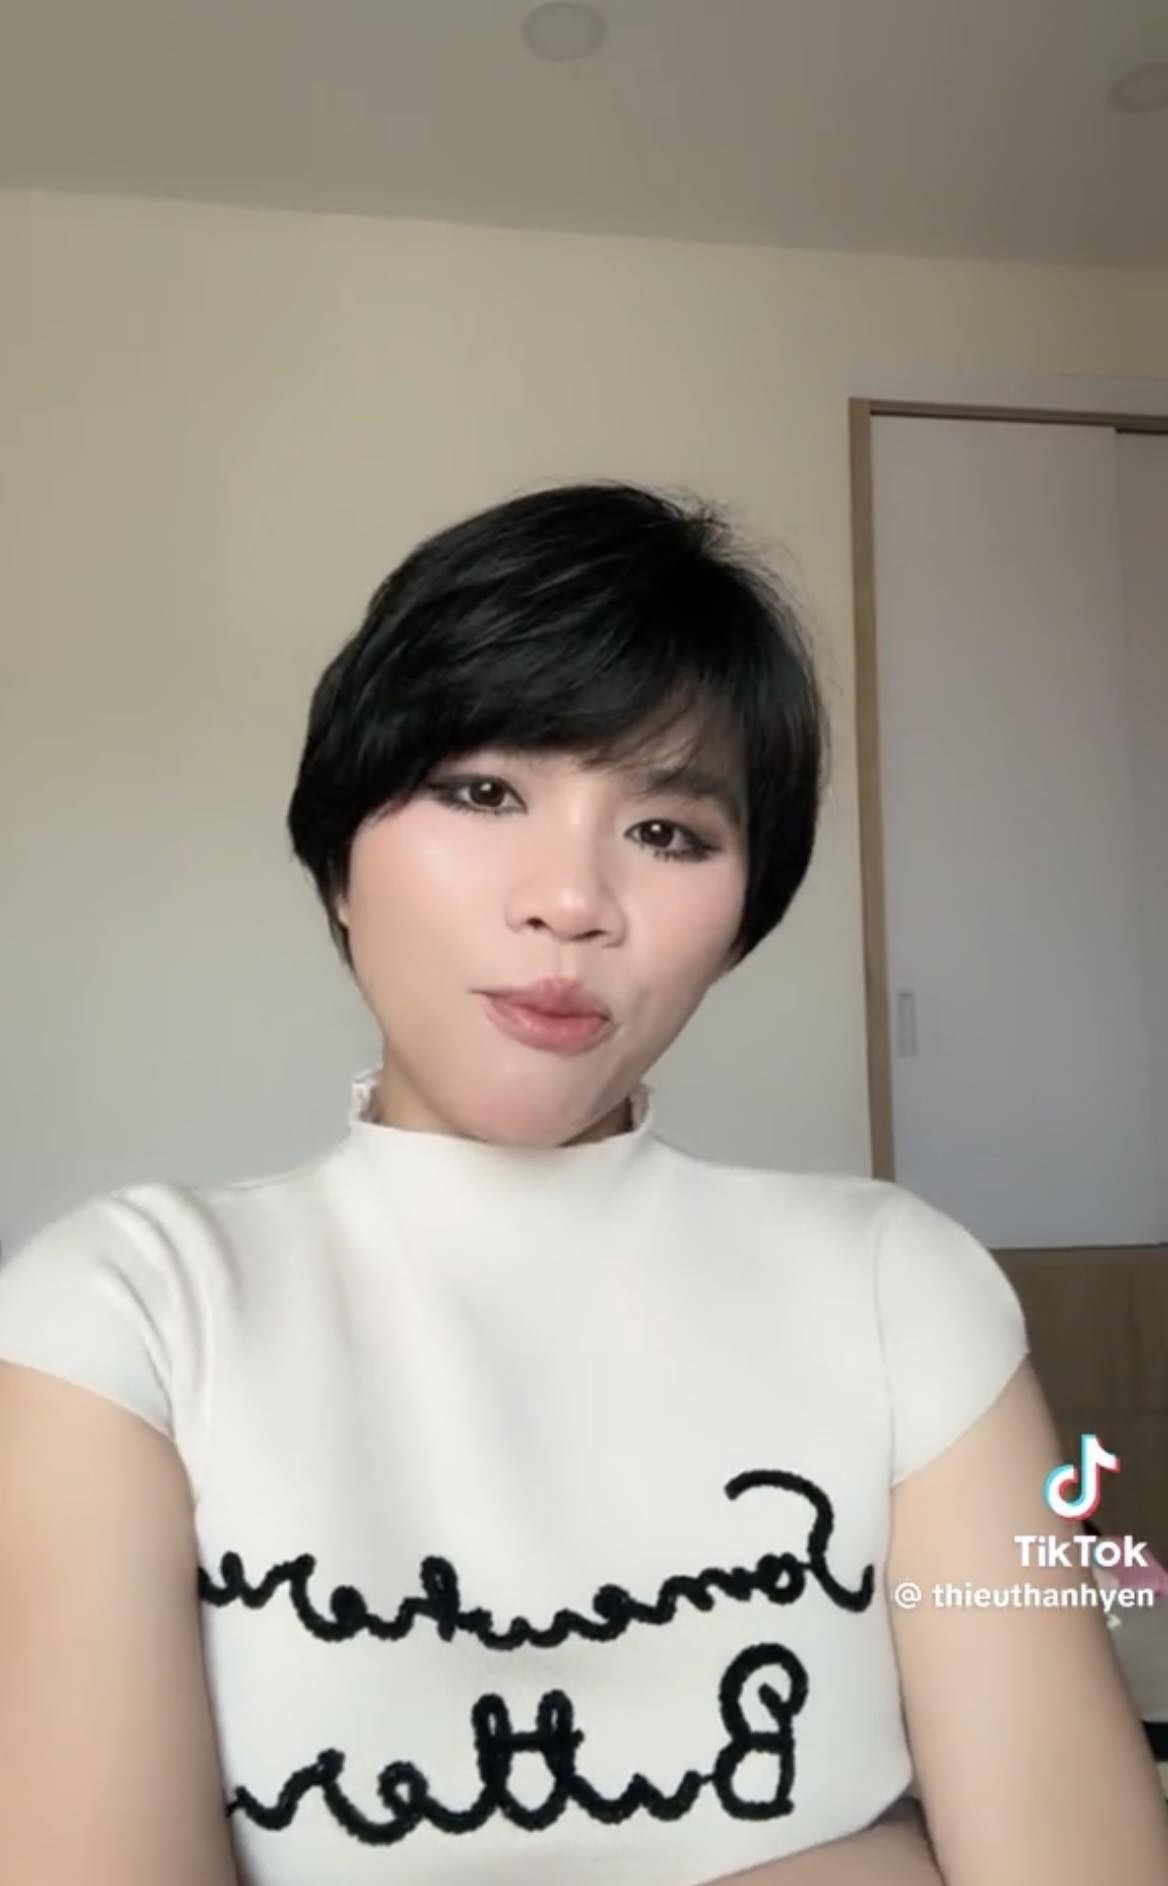 Nữ Tiktoker Việt thừa nhận bị bệnh nan y, cảnh báo nguyên nhân từ nhiều thói quen xấu ai cũng gặp phải - ảnh 2